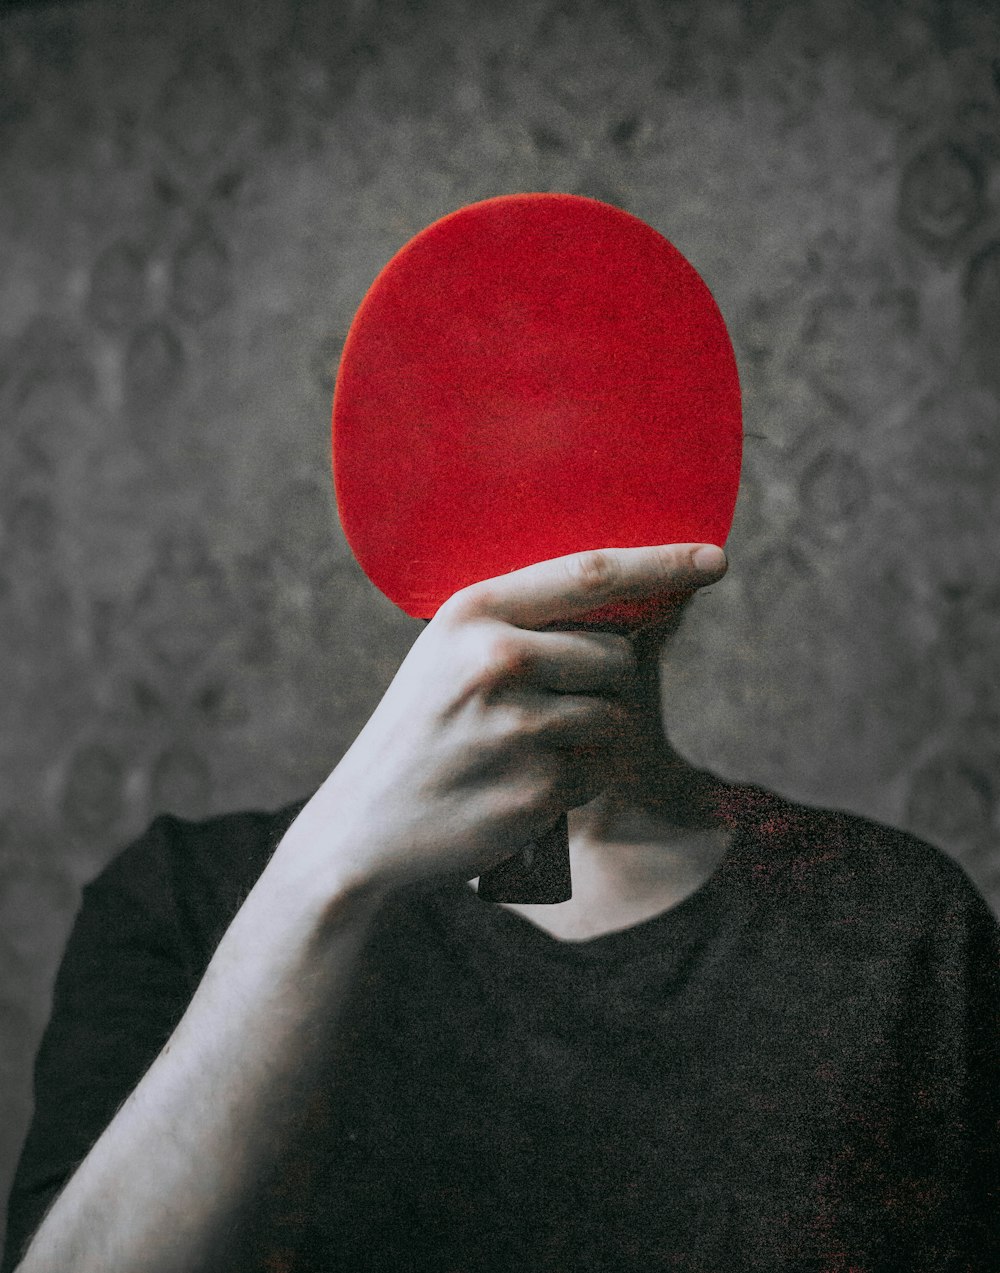 una persona sosteniendo una paleta roja de ping pong en su cara